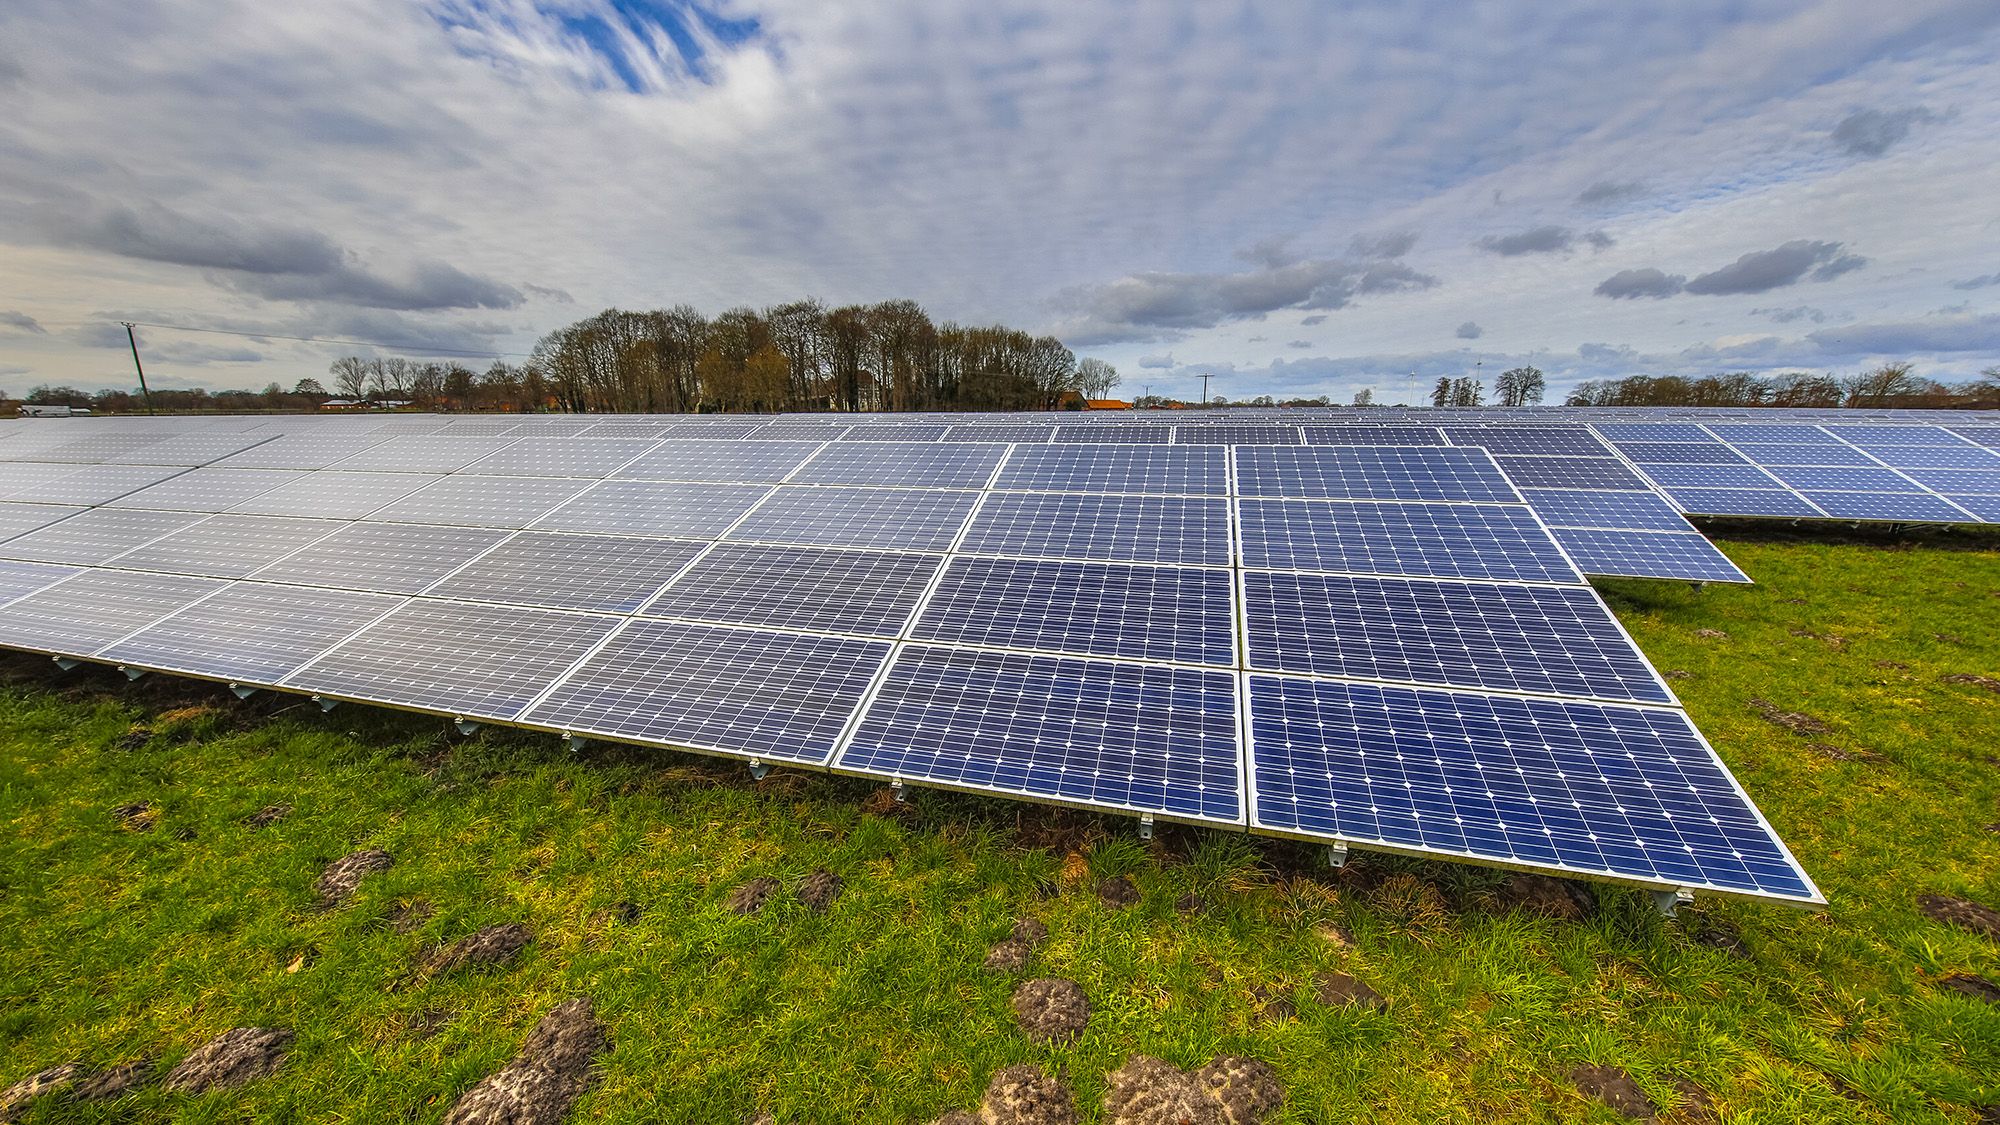 Les comarques barcelonines tenen més de 76.000 hectàrees que podrien acollir parcs solars fotovoltaics